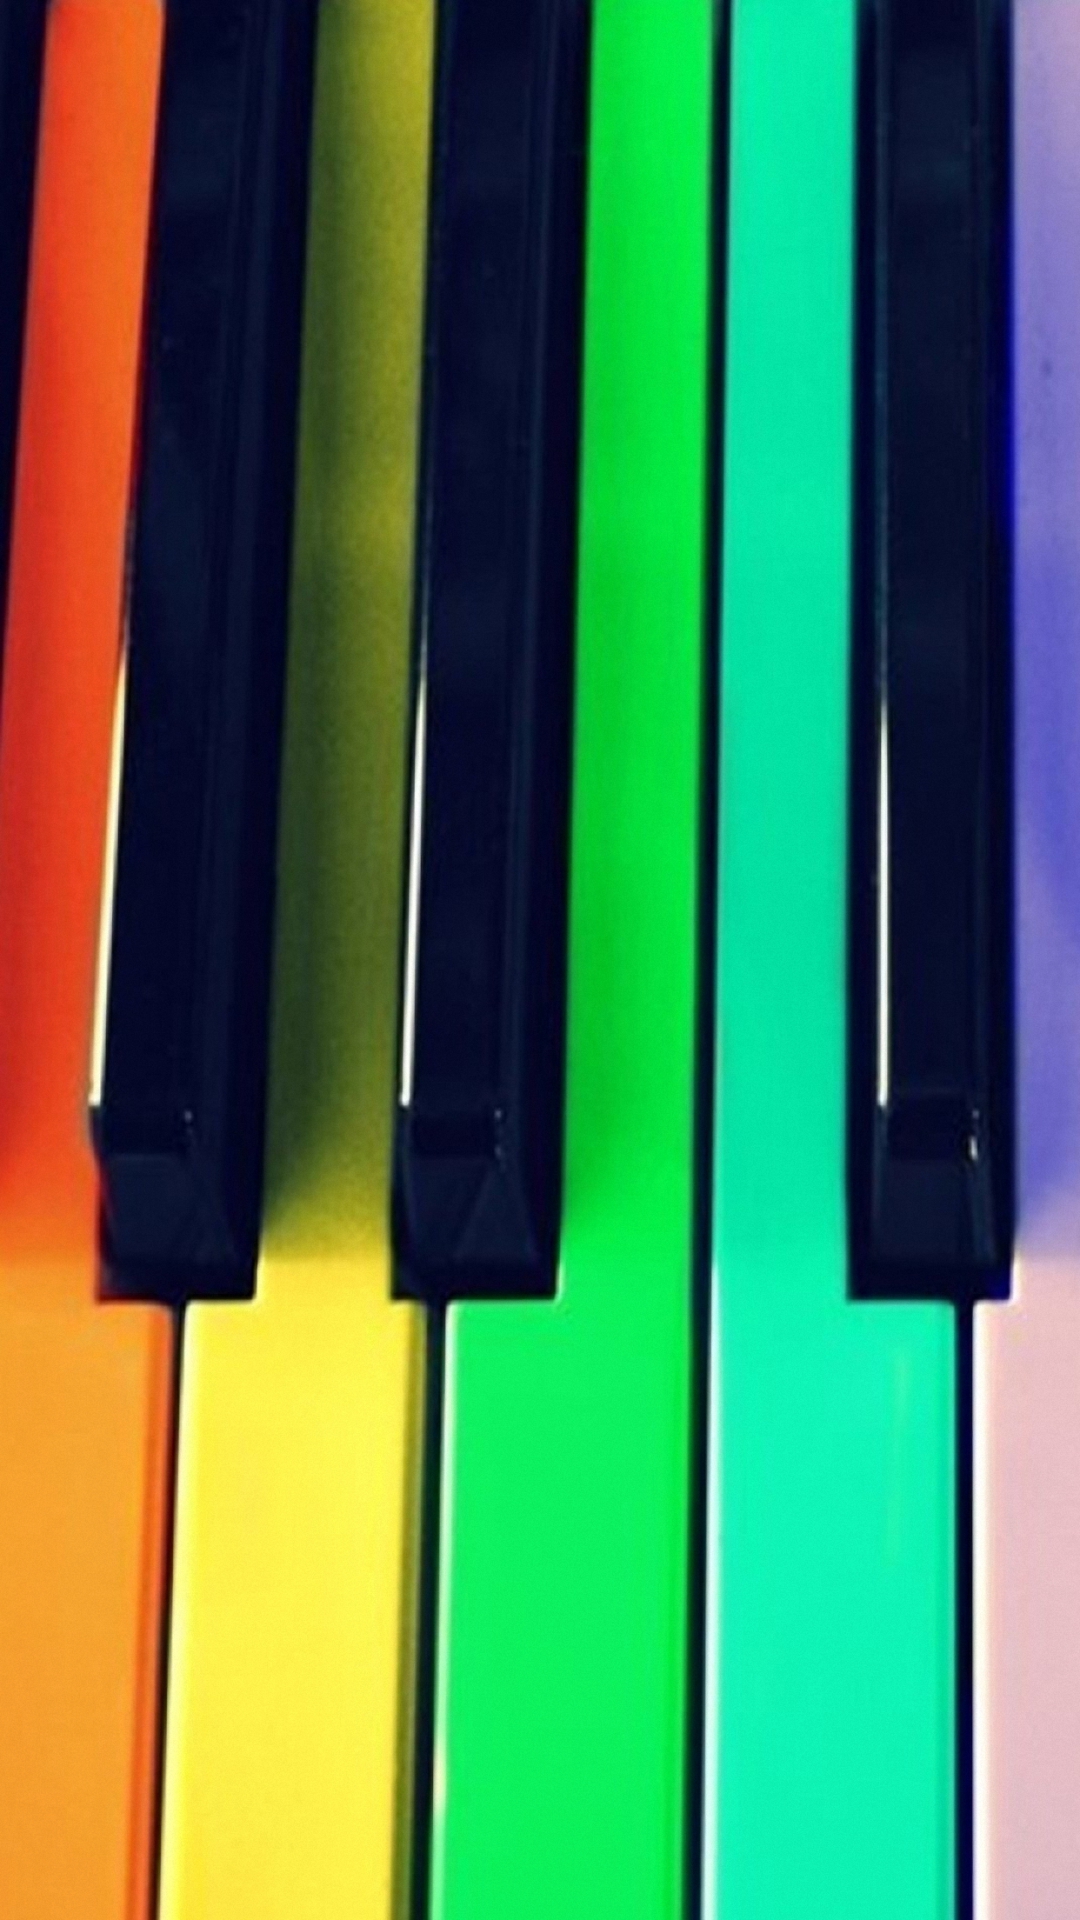 Bàn phím đàn piano là một cách để tạo ra âm nhạc và giải trí vô cùng thú vị. Hãy xem hình ảnh về bàn phím đàn piano để đặt chân vào thế giới âm nhạc đầy mê hoặc.